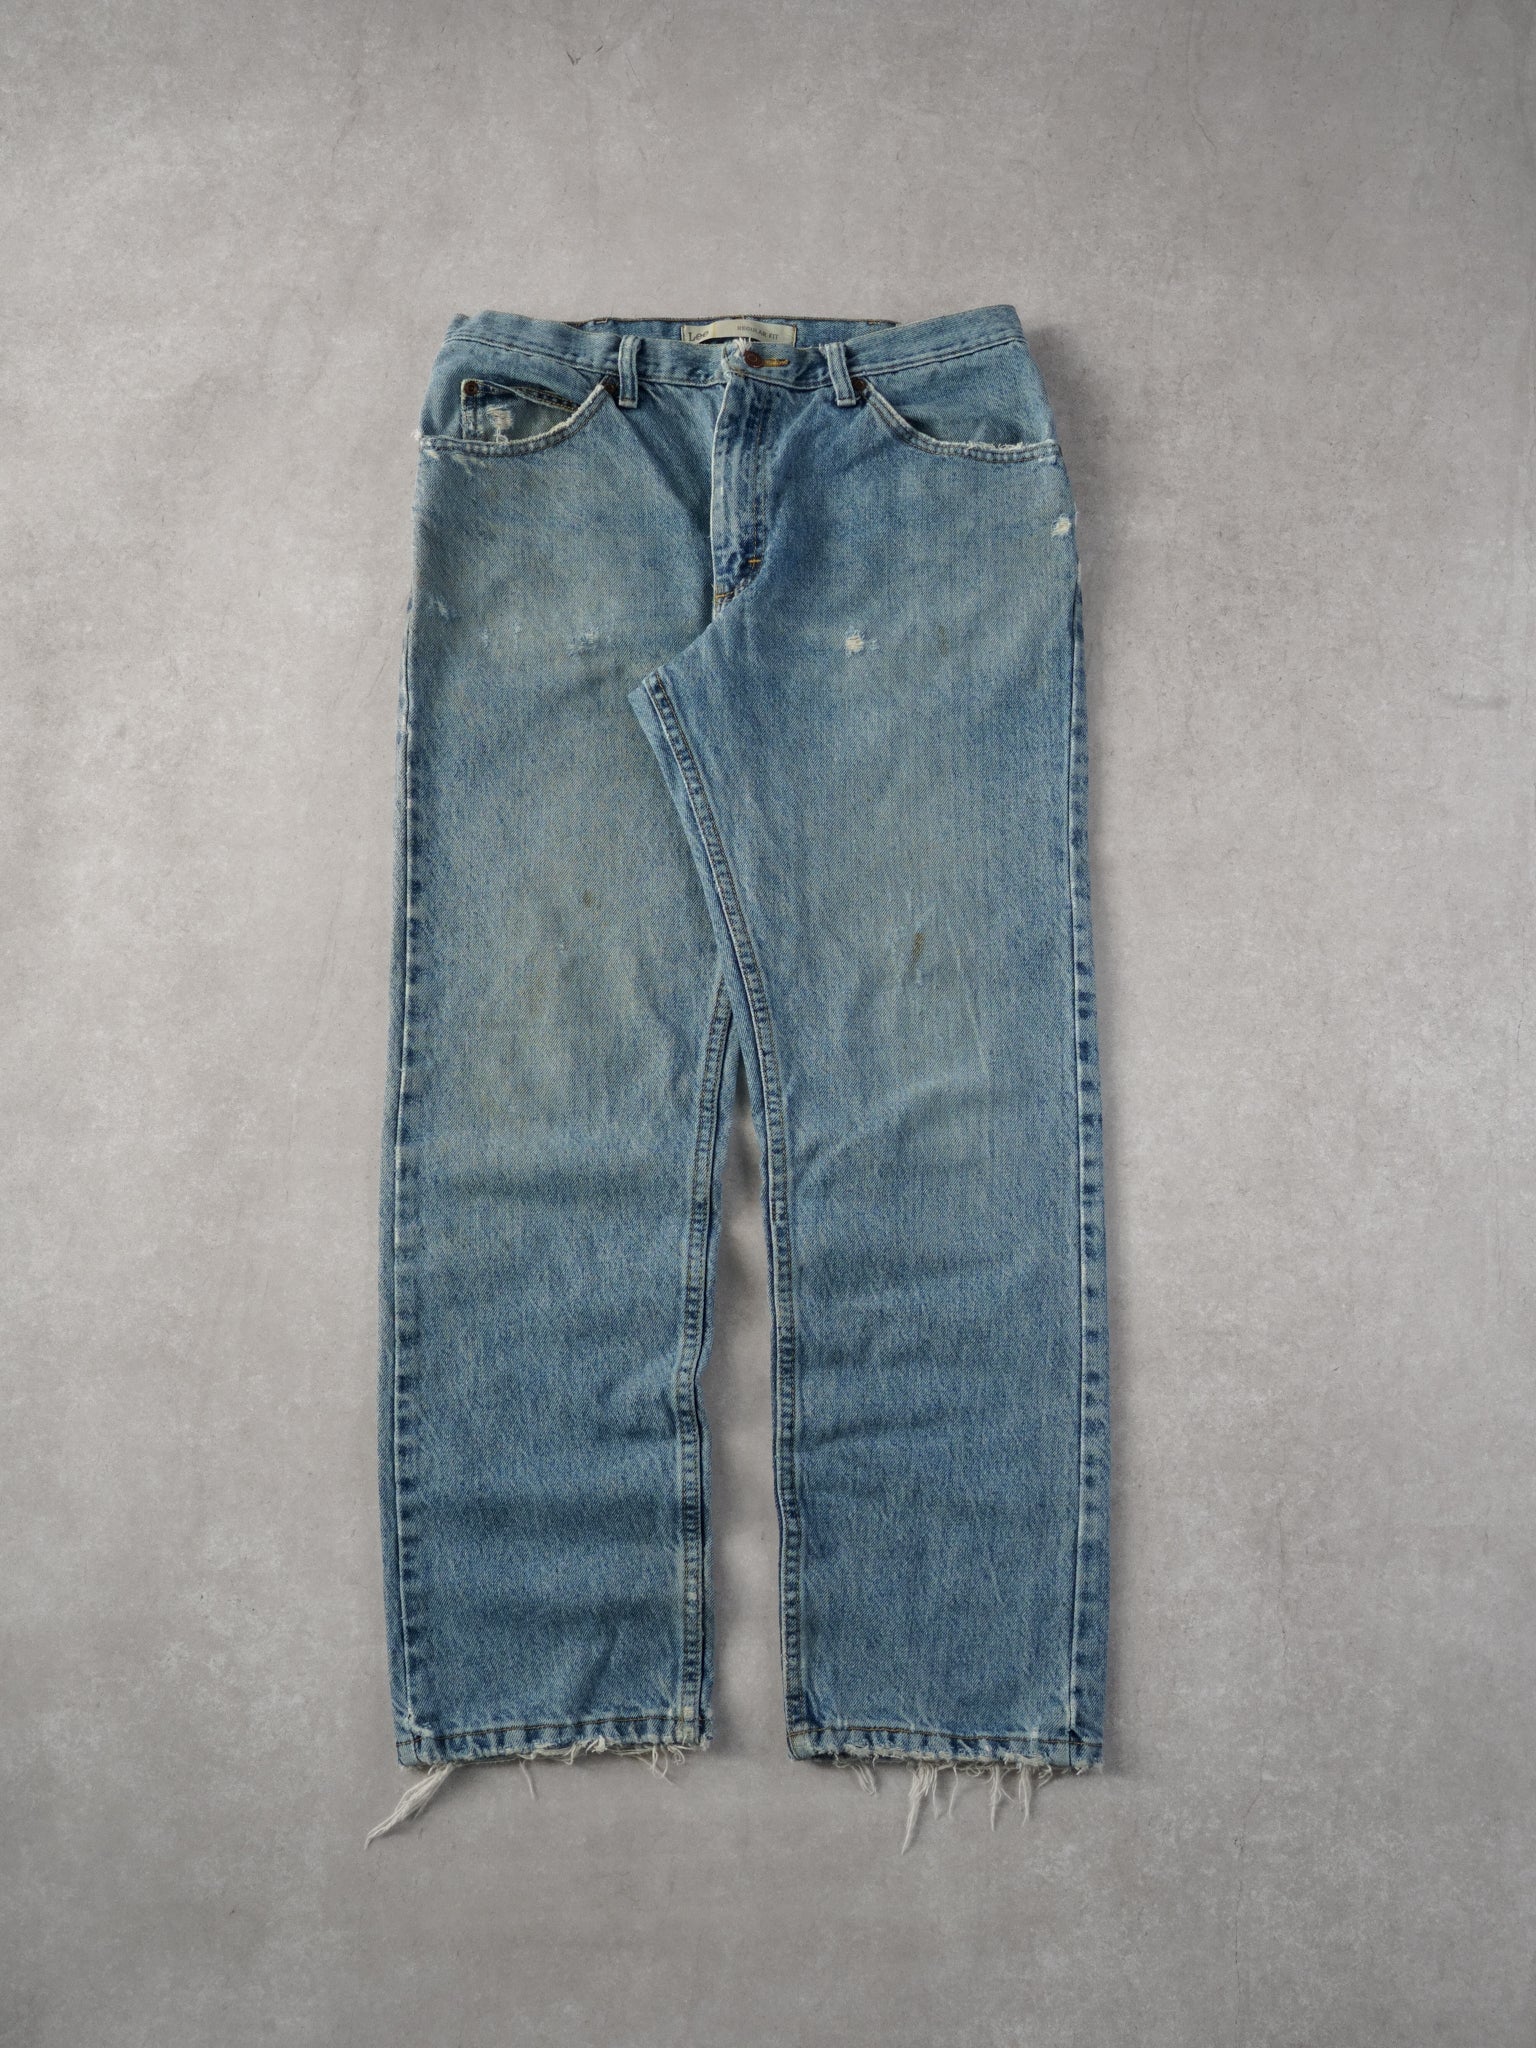 Vintage 90s Light Blue Lee Regular Fit Denim Jeans (34x30)